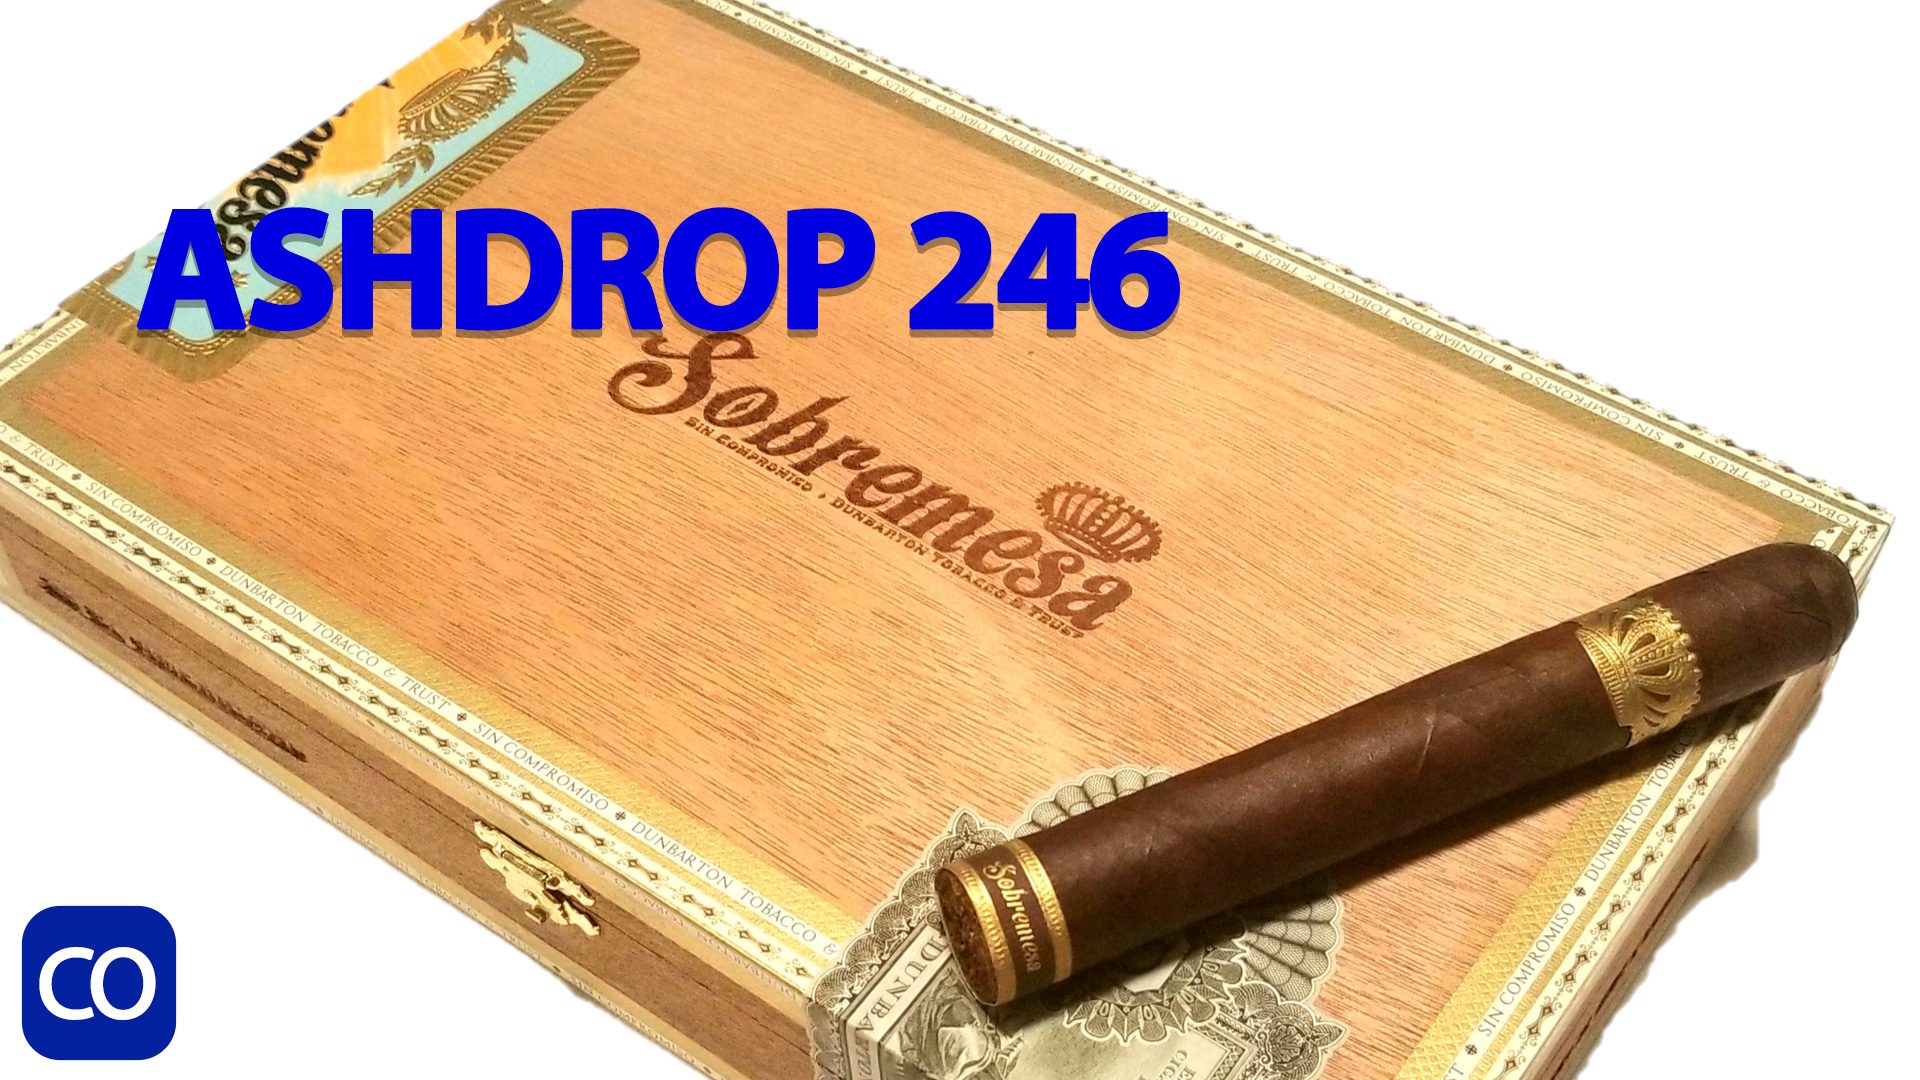 CigarAndPipes CO Ashdrop 246